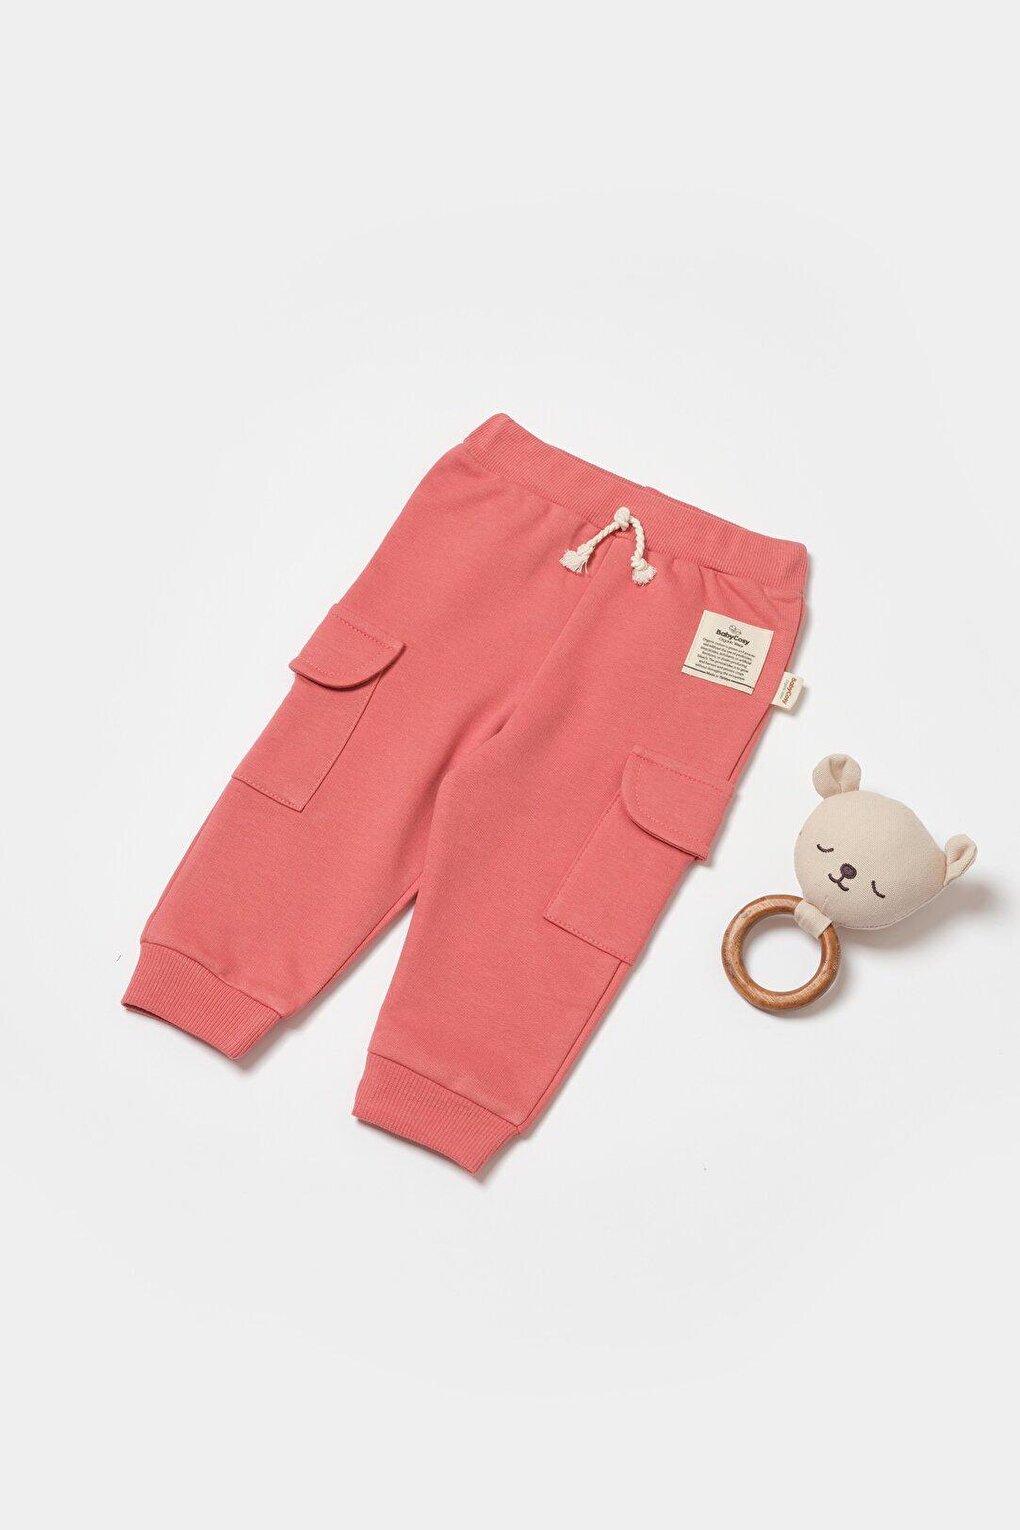 Детские спортивные штаны с грузовым карманом BabyCosy Organic Wear, розовый